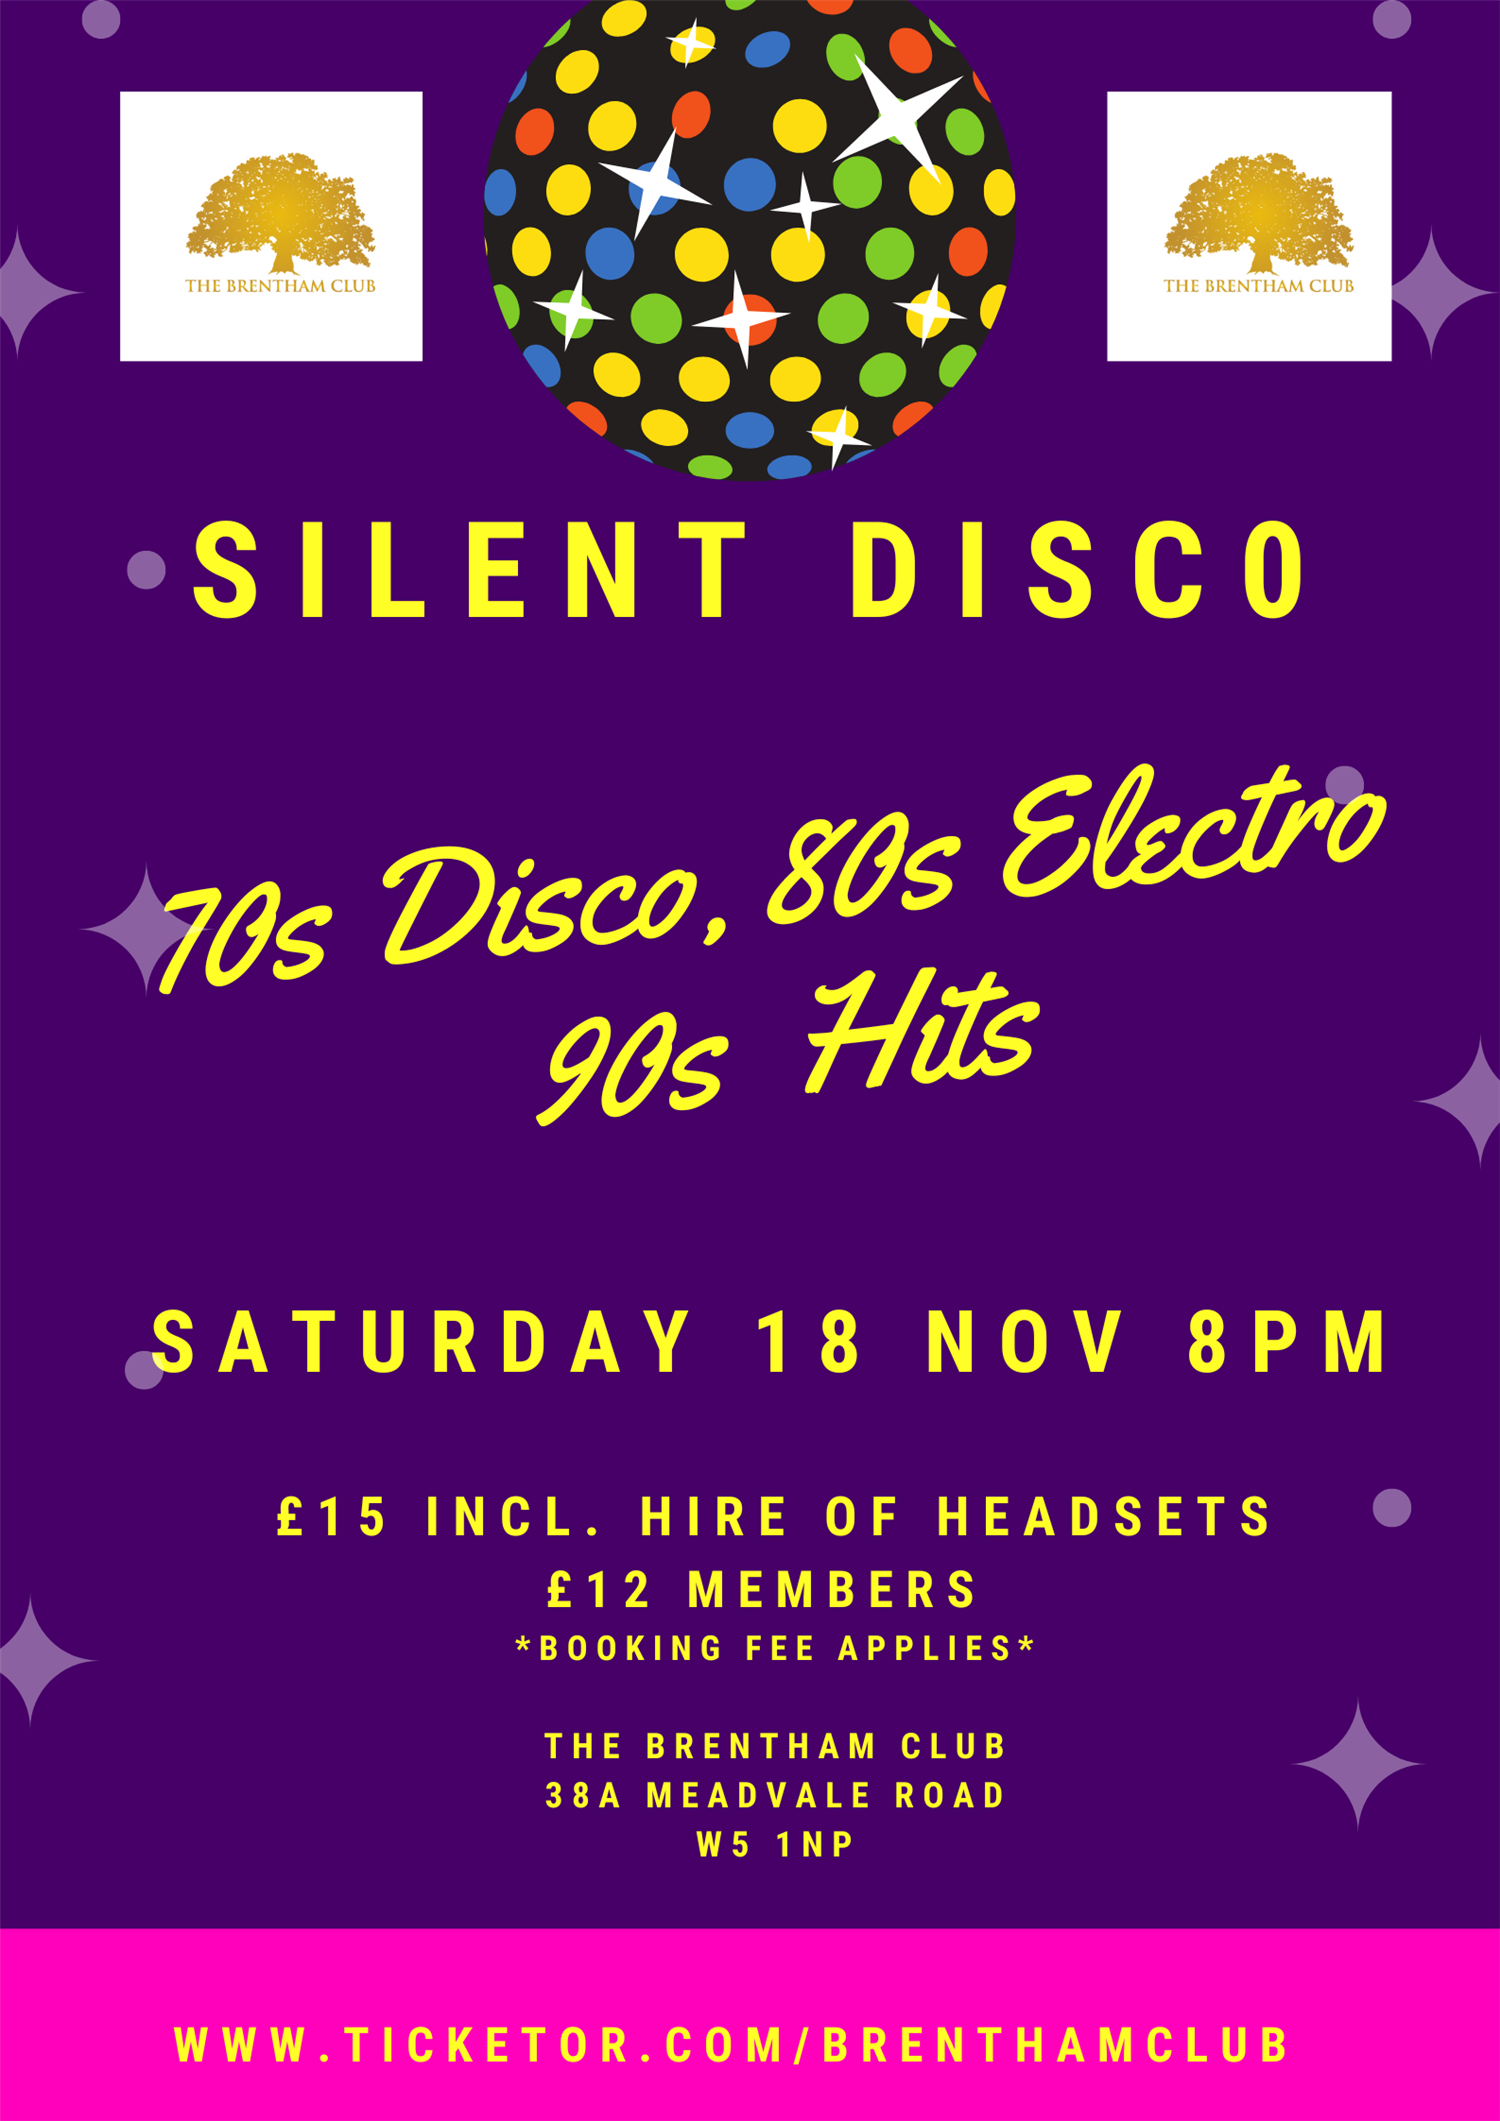 Silent Disco 70sDisco, 80s Electro, 90s Hits on nov. 18, 20:00@The Brentham Club - Achetez des billets et obtenez des informations surBrenthamclub.co.uk 